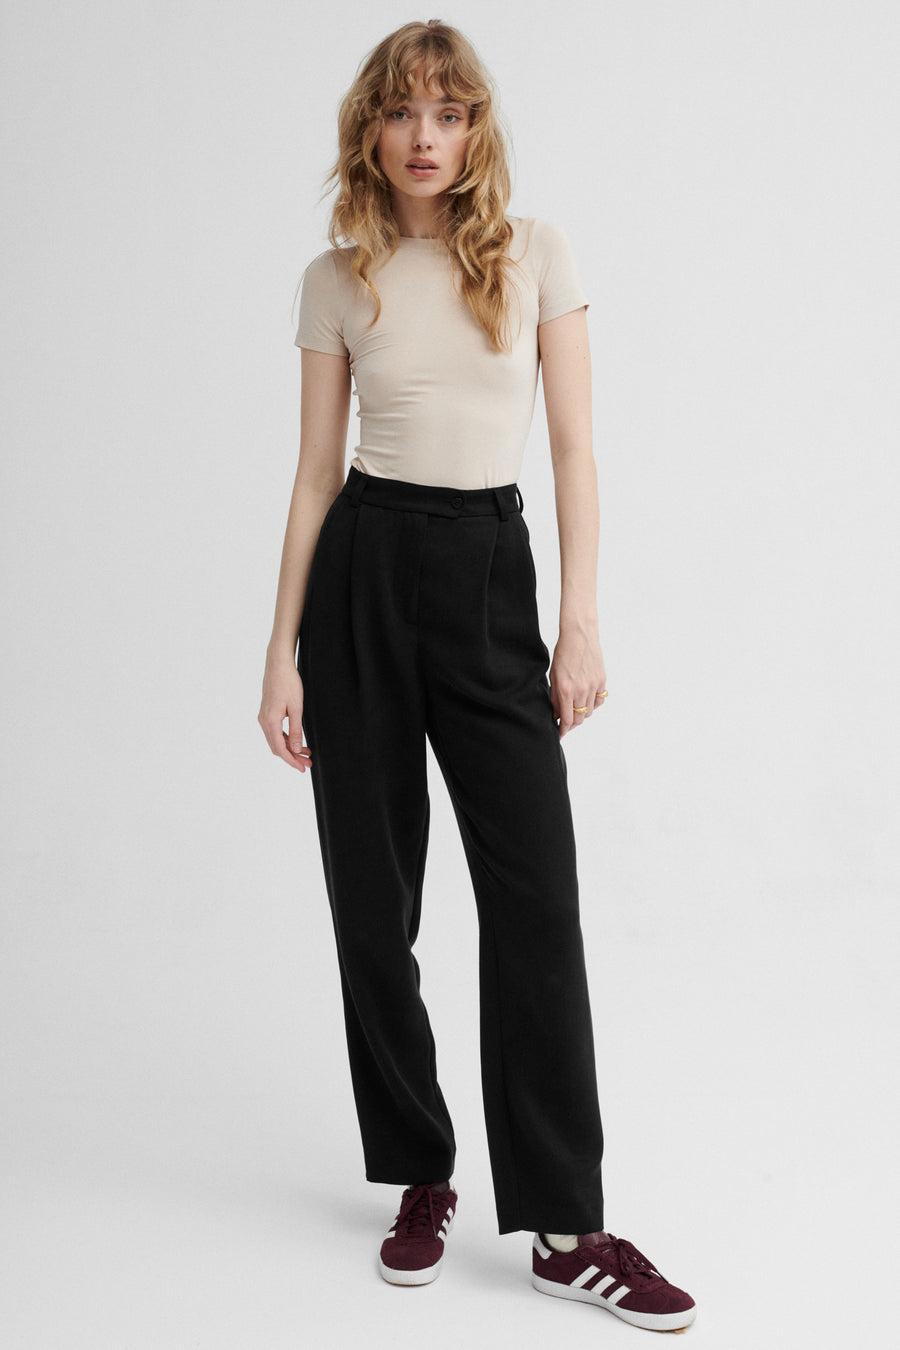 Spodnie z Tencelu™ / 05 / 17 / onyx black *t-shirt-z-ecovero-13-04-sandshell*?Modelka ma 179 cm wzrostu i prezentuje rozmiar XS?